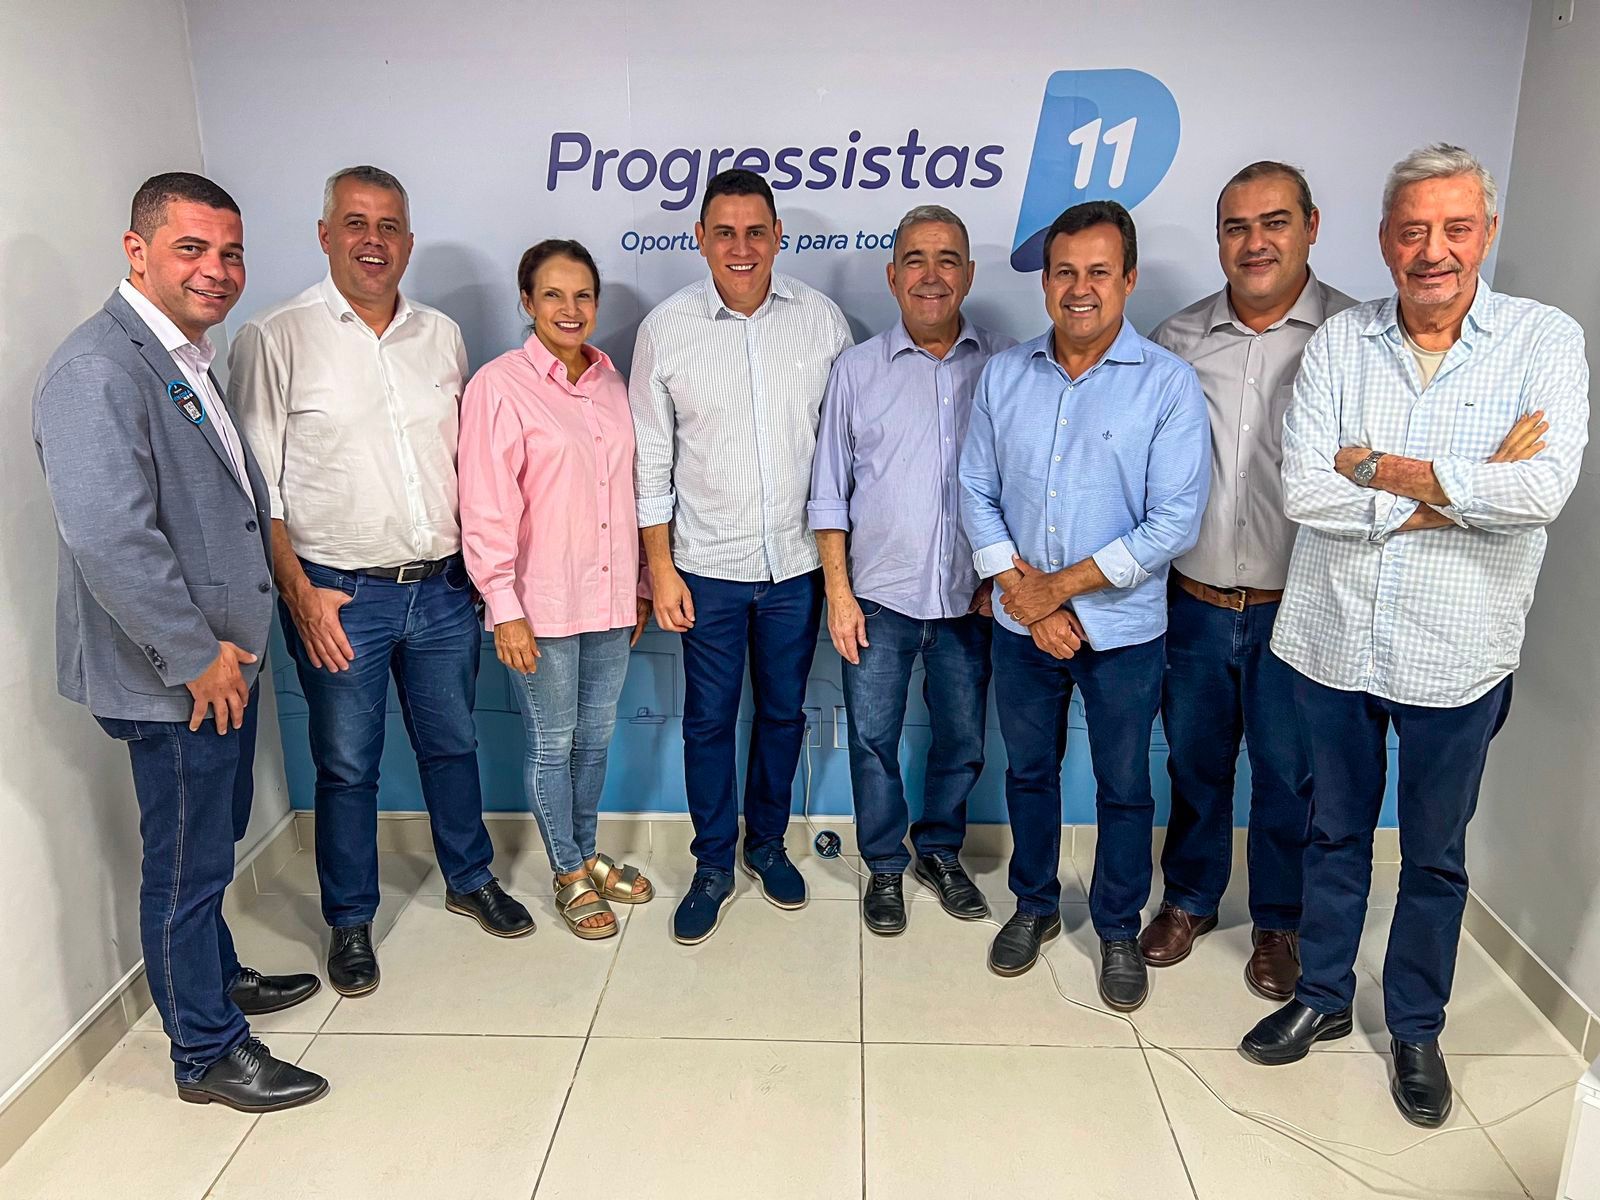 Deputado Da Vitória será confirmado como presidente na Convenção do Progressistas Espírito Santo, que vai eleger a nova Executiva do partido